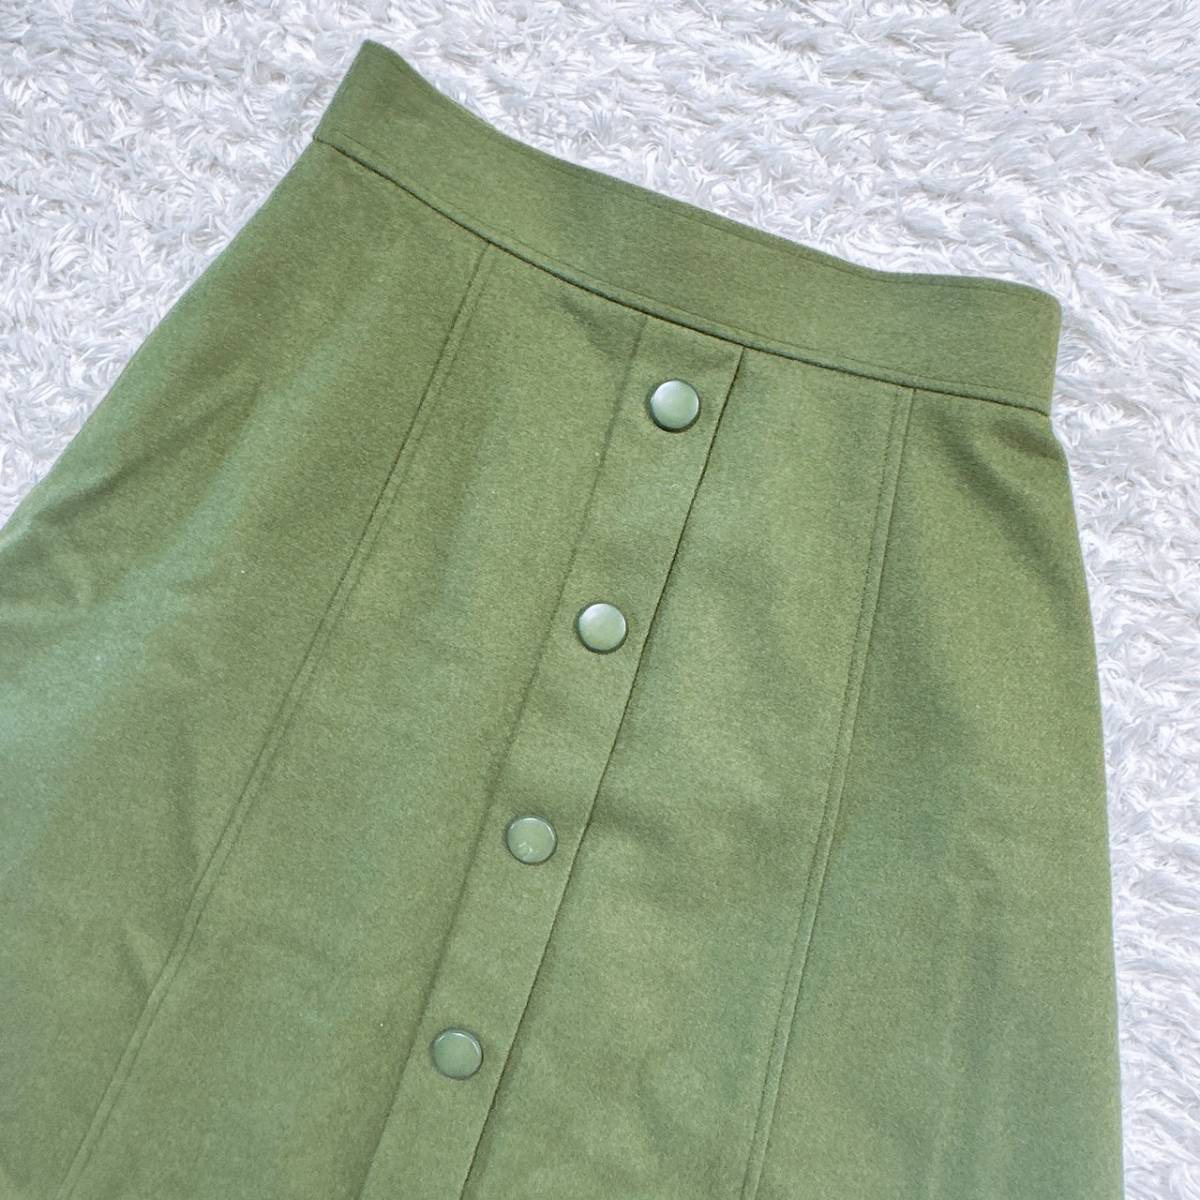 レディース ROSA スカート ロング オリーブ 緑 グリーン かわいい お出かけ ボタン カジュアル ウエストゴム 秋 冬 【25843】